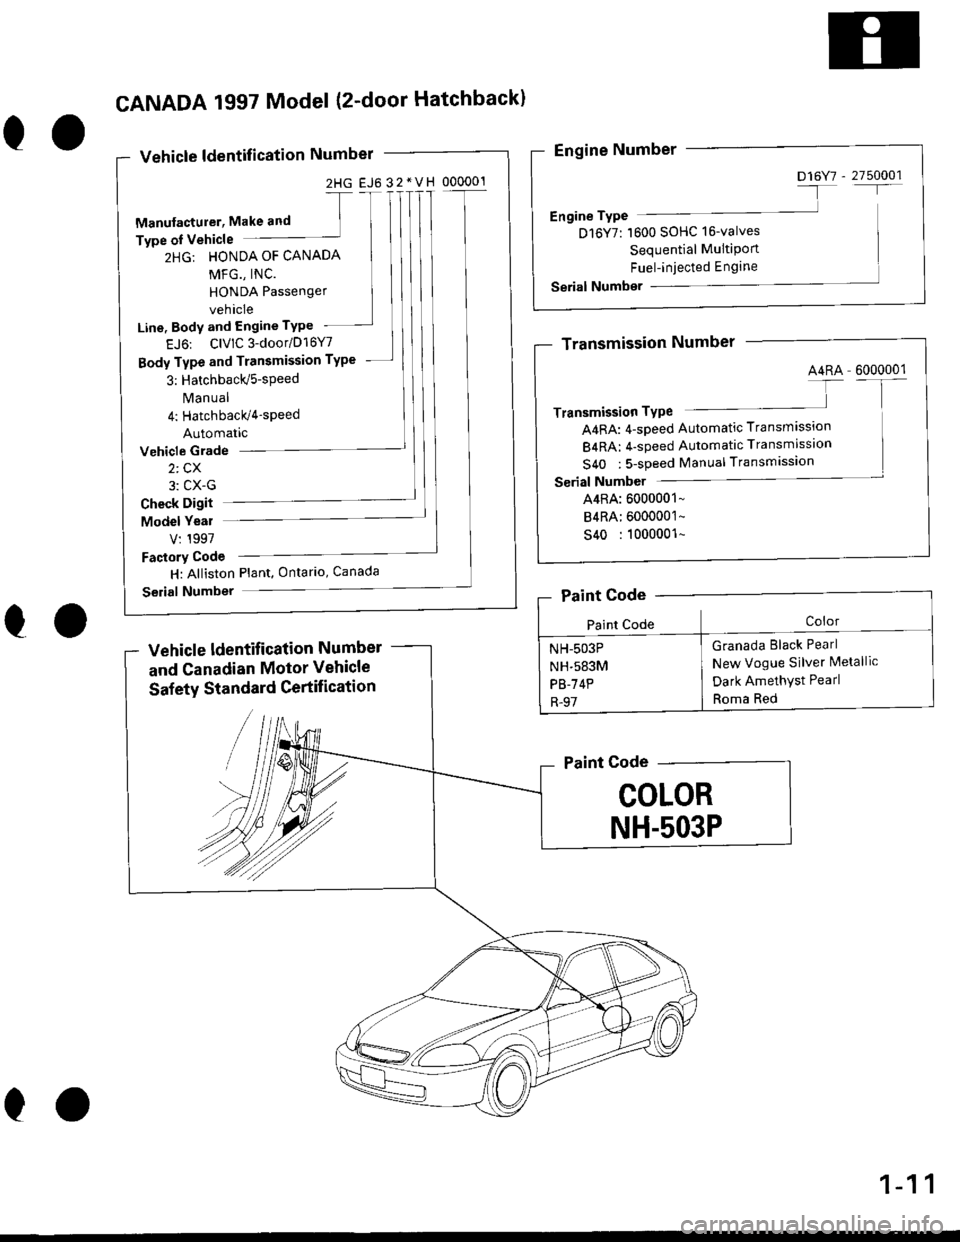 HONDA CIVIC 1998 6.G Workshop Manual 2HG EJ6 32*VH 000001
eo
CANADA 1997 Model (2-door Hatchbackl
Vehicle ldentification Number
-[
Manufacturer, Make and ]Type oI Vehicle
2HG: HONDA OF CANADA
MFG., INC.
HONDA Passenger
vehicle
Line, Body